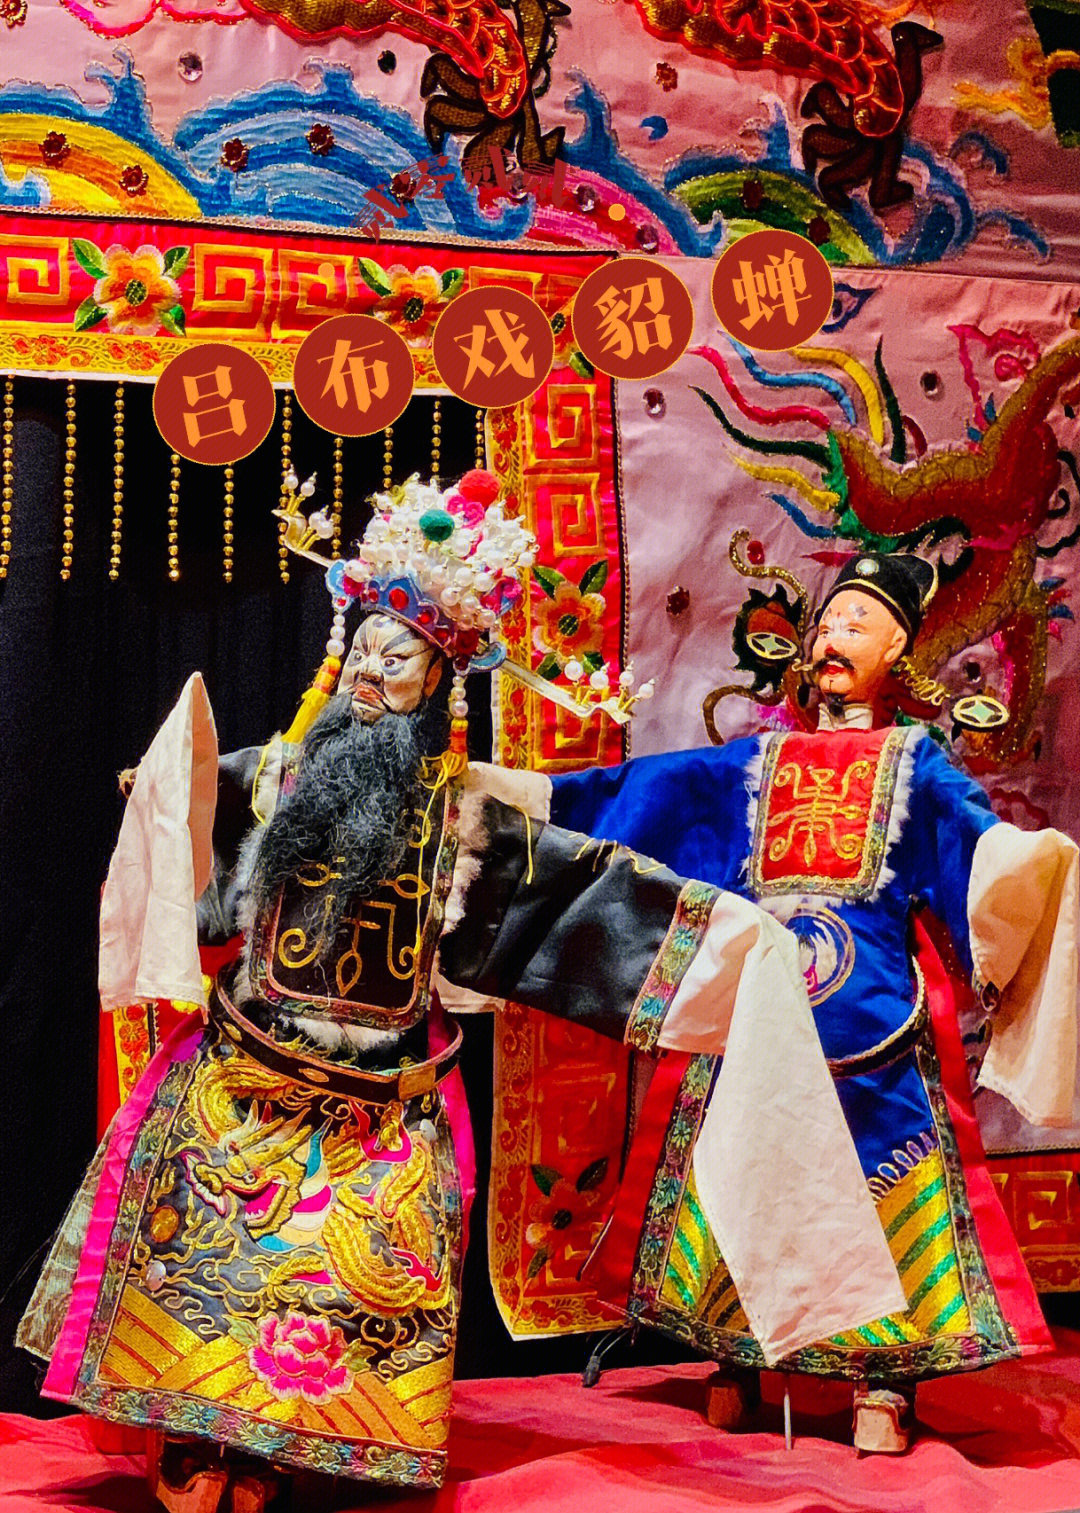 潮剧是用潮州方言演唱的一个古老的地方戏曲剧种,是宋元南戏的一个